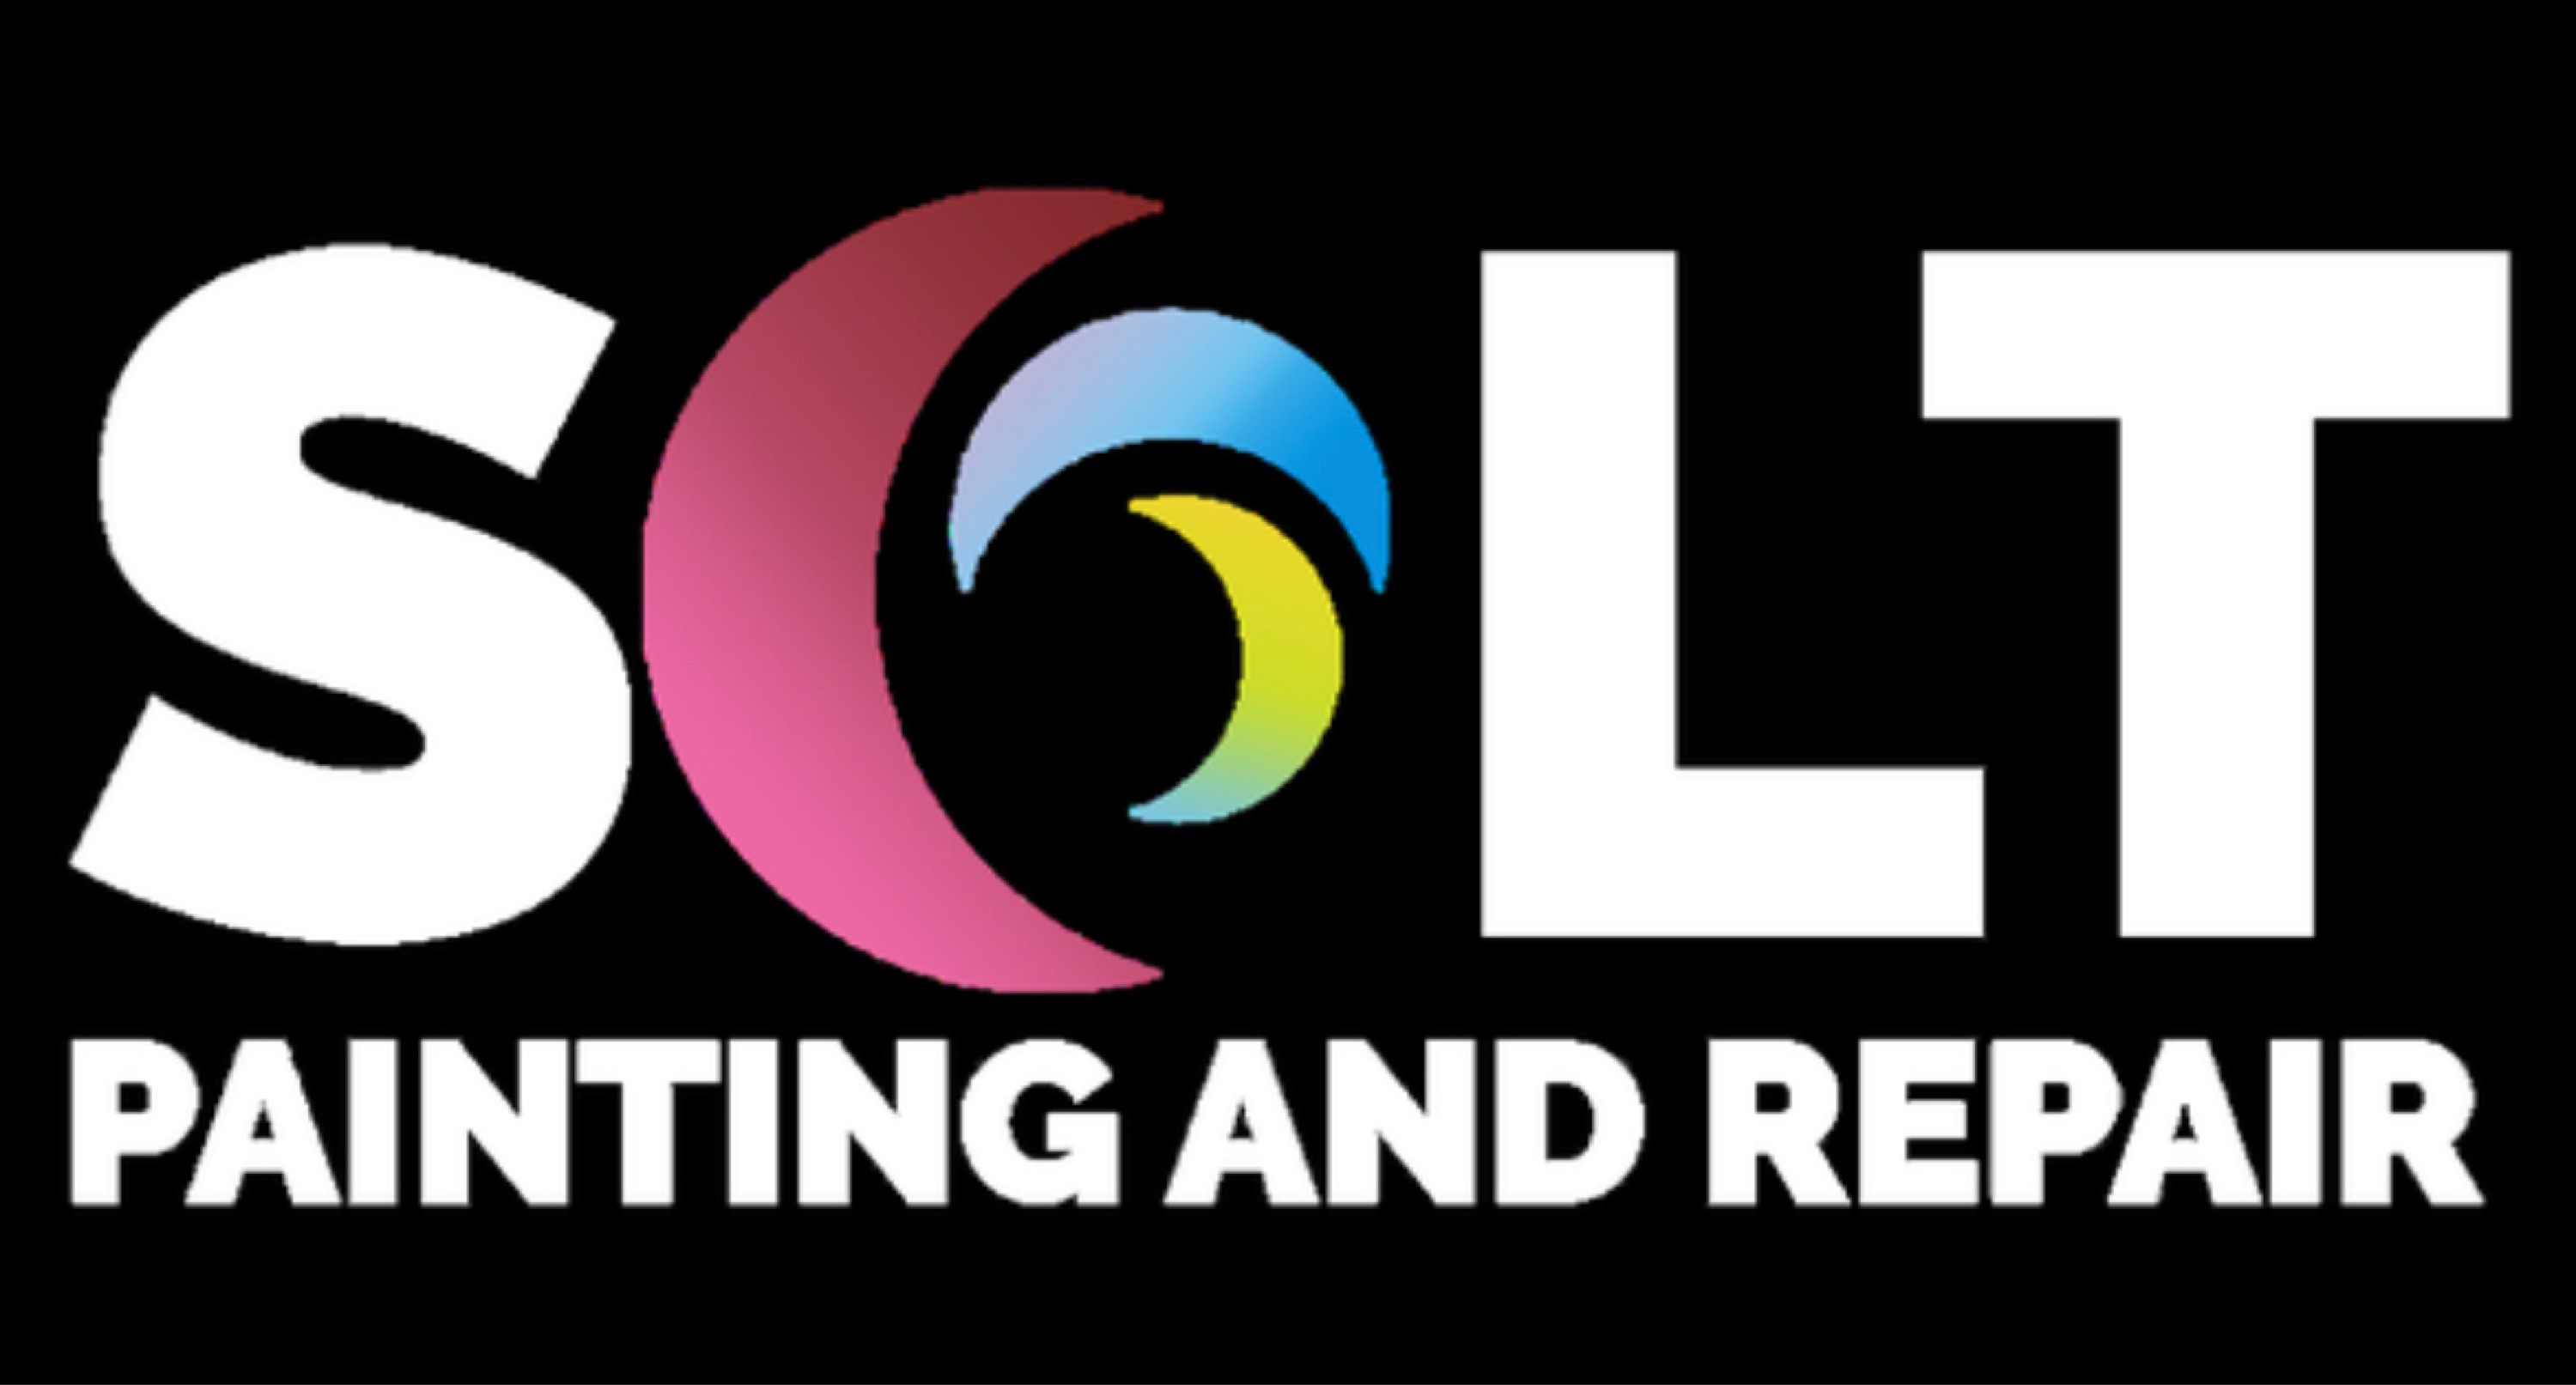 Solt Painting and Repair Logo